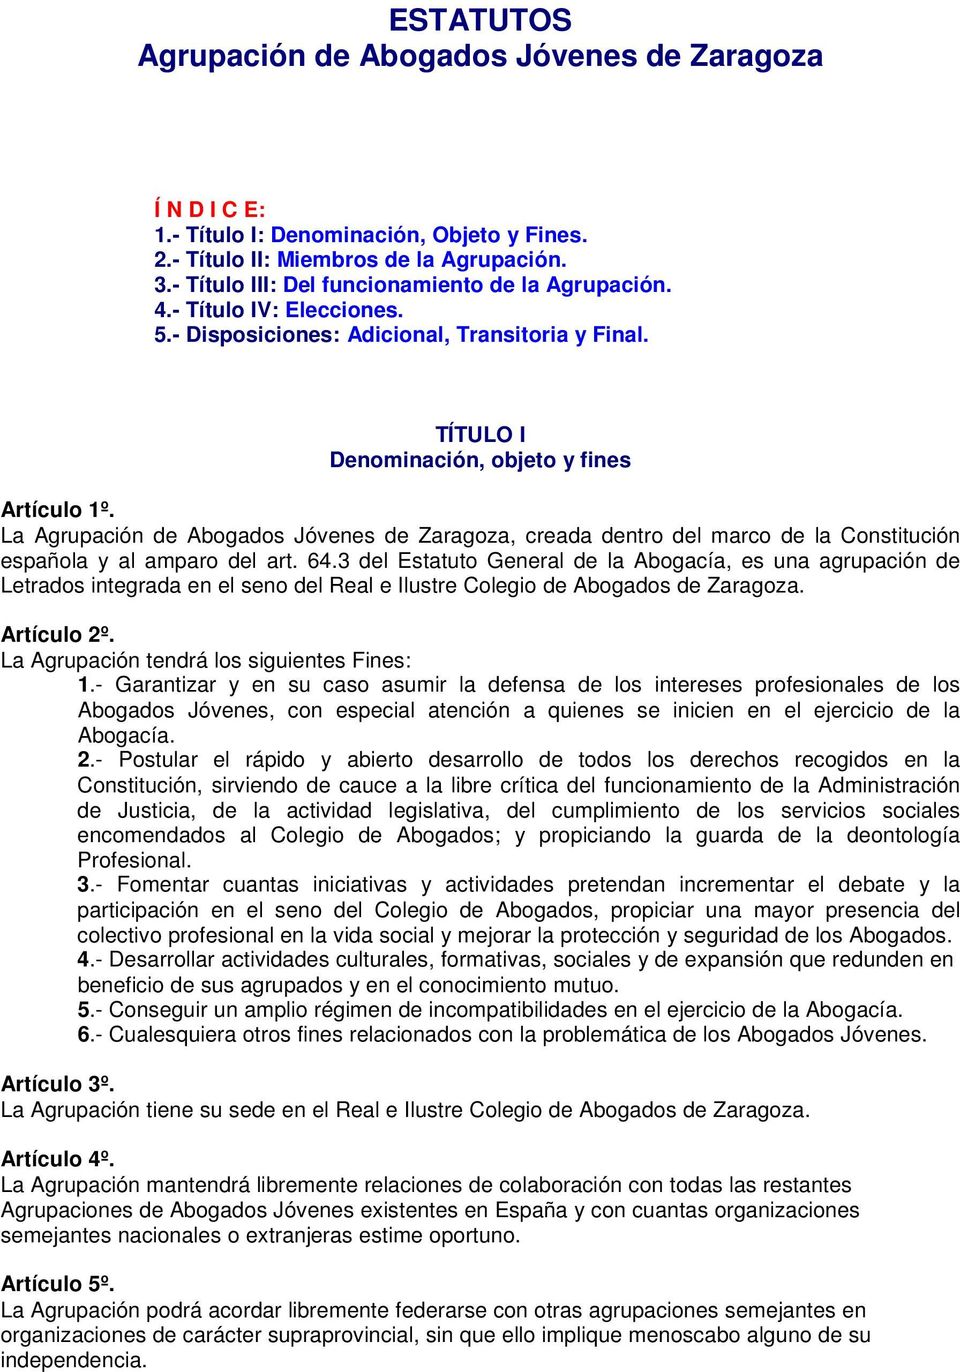 La Agrupación de Abogados Jóvenes de Zaragoza, creada dentro del marco de la Constitución española y al amparo del art. 64.